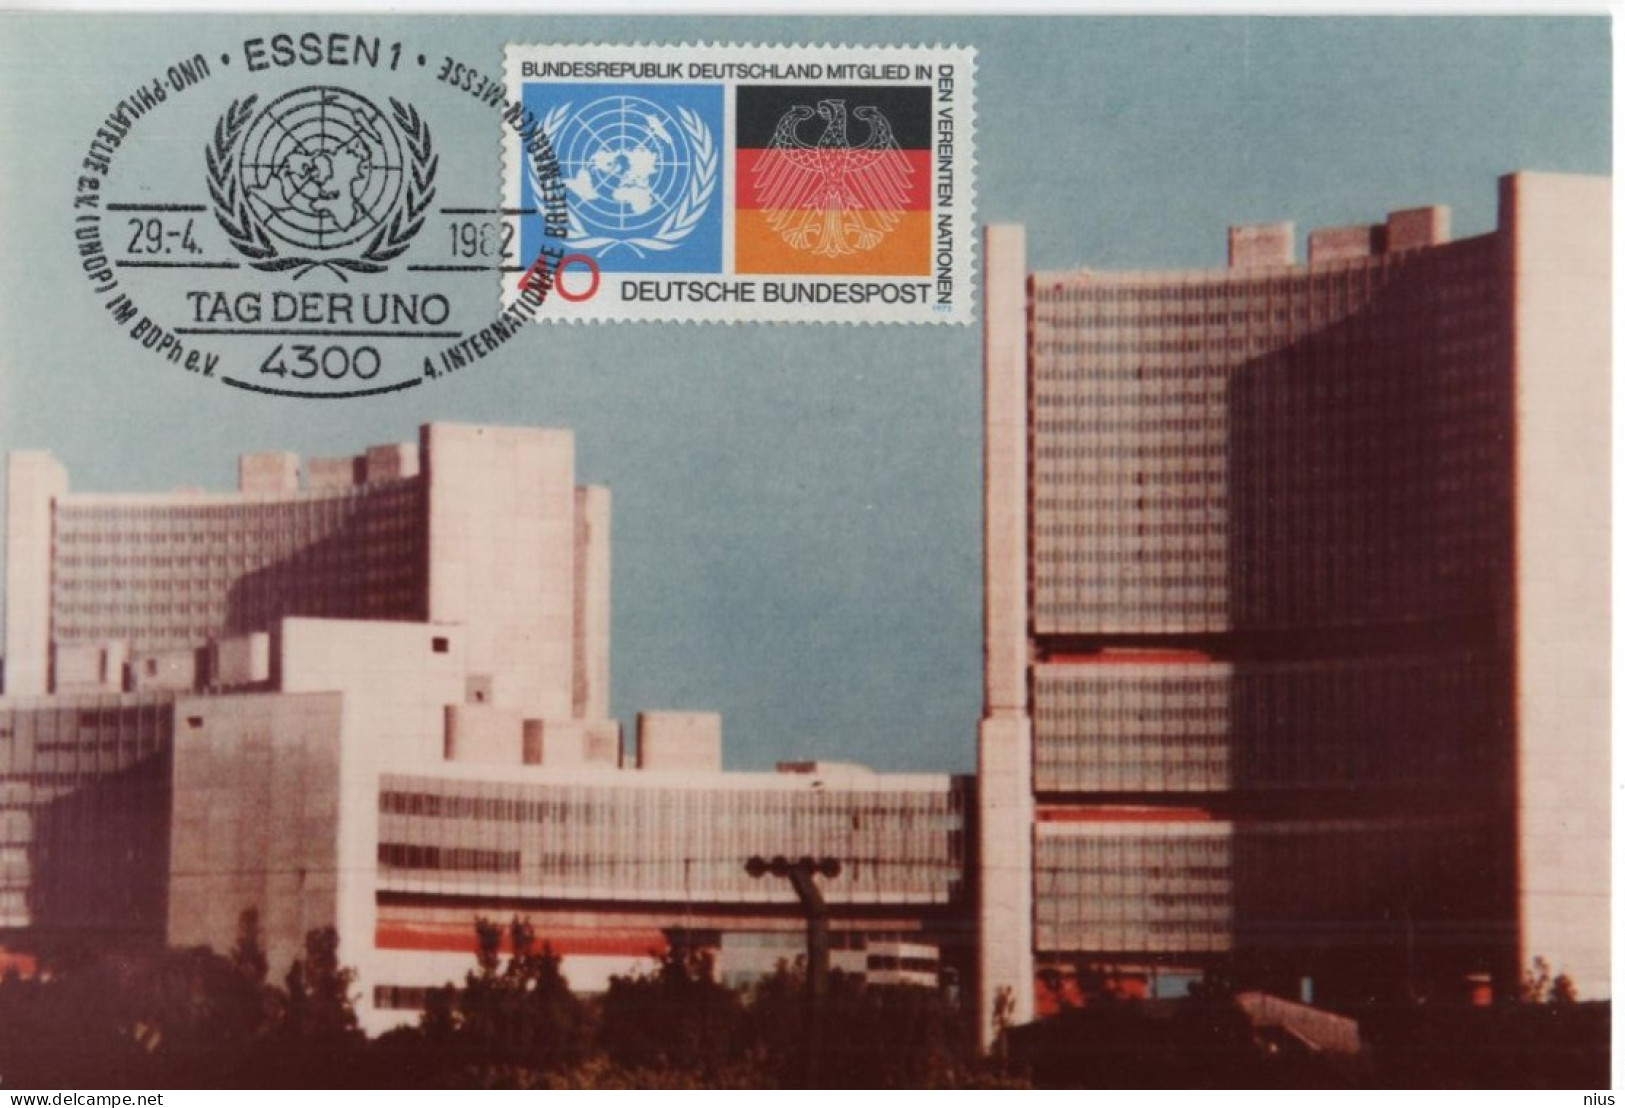 Germany Deutschland 1982 Maximum Card, Tag Der UNO UN, Vienna Wien Austria, Vereinten Nationen United Nations, Essen - 1981-2000